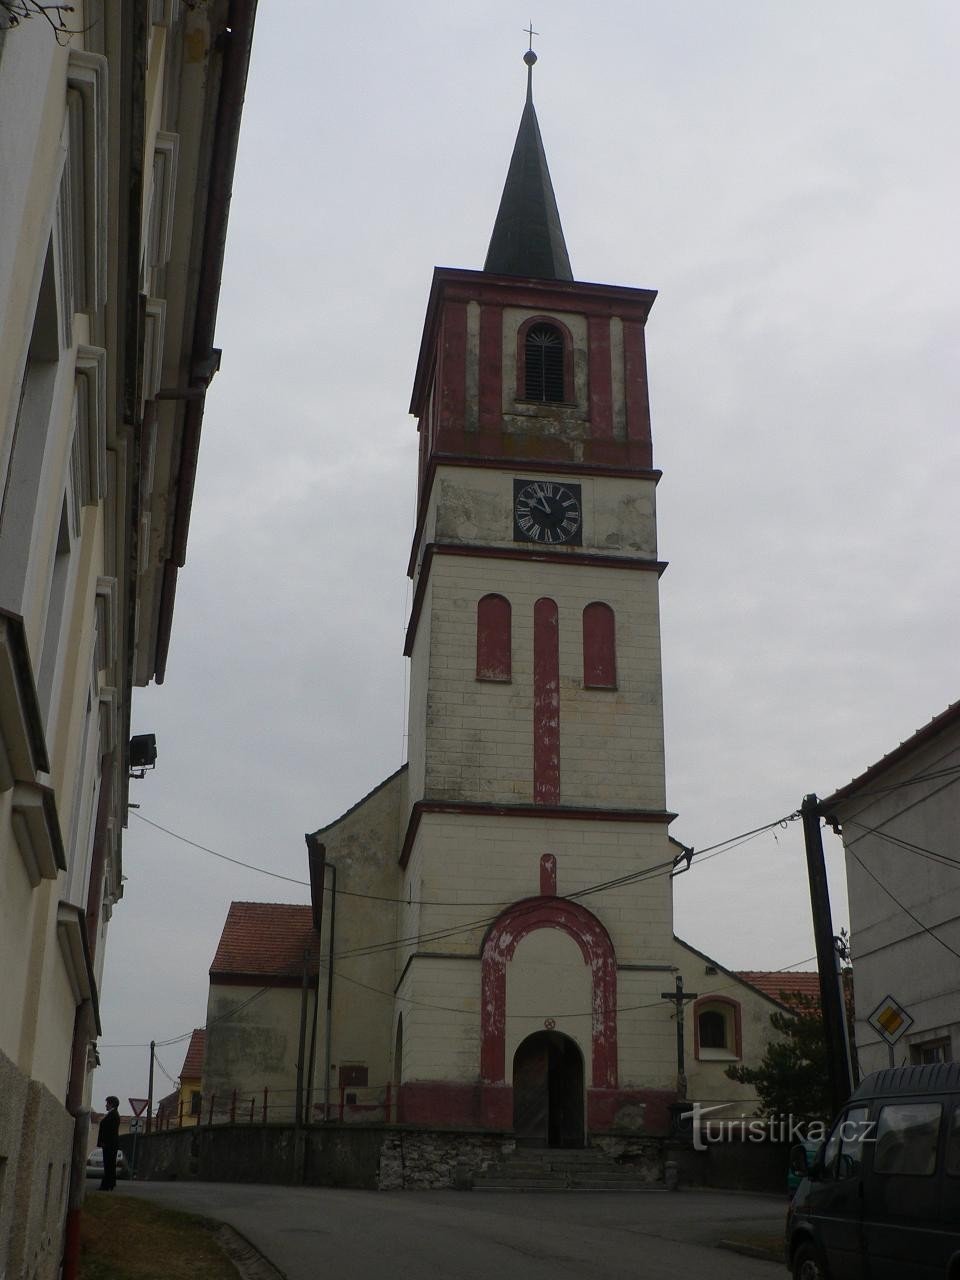 Volenice, tháp của nhà thờ St. Peter và Paul